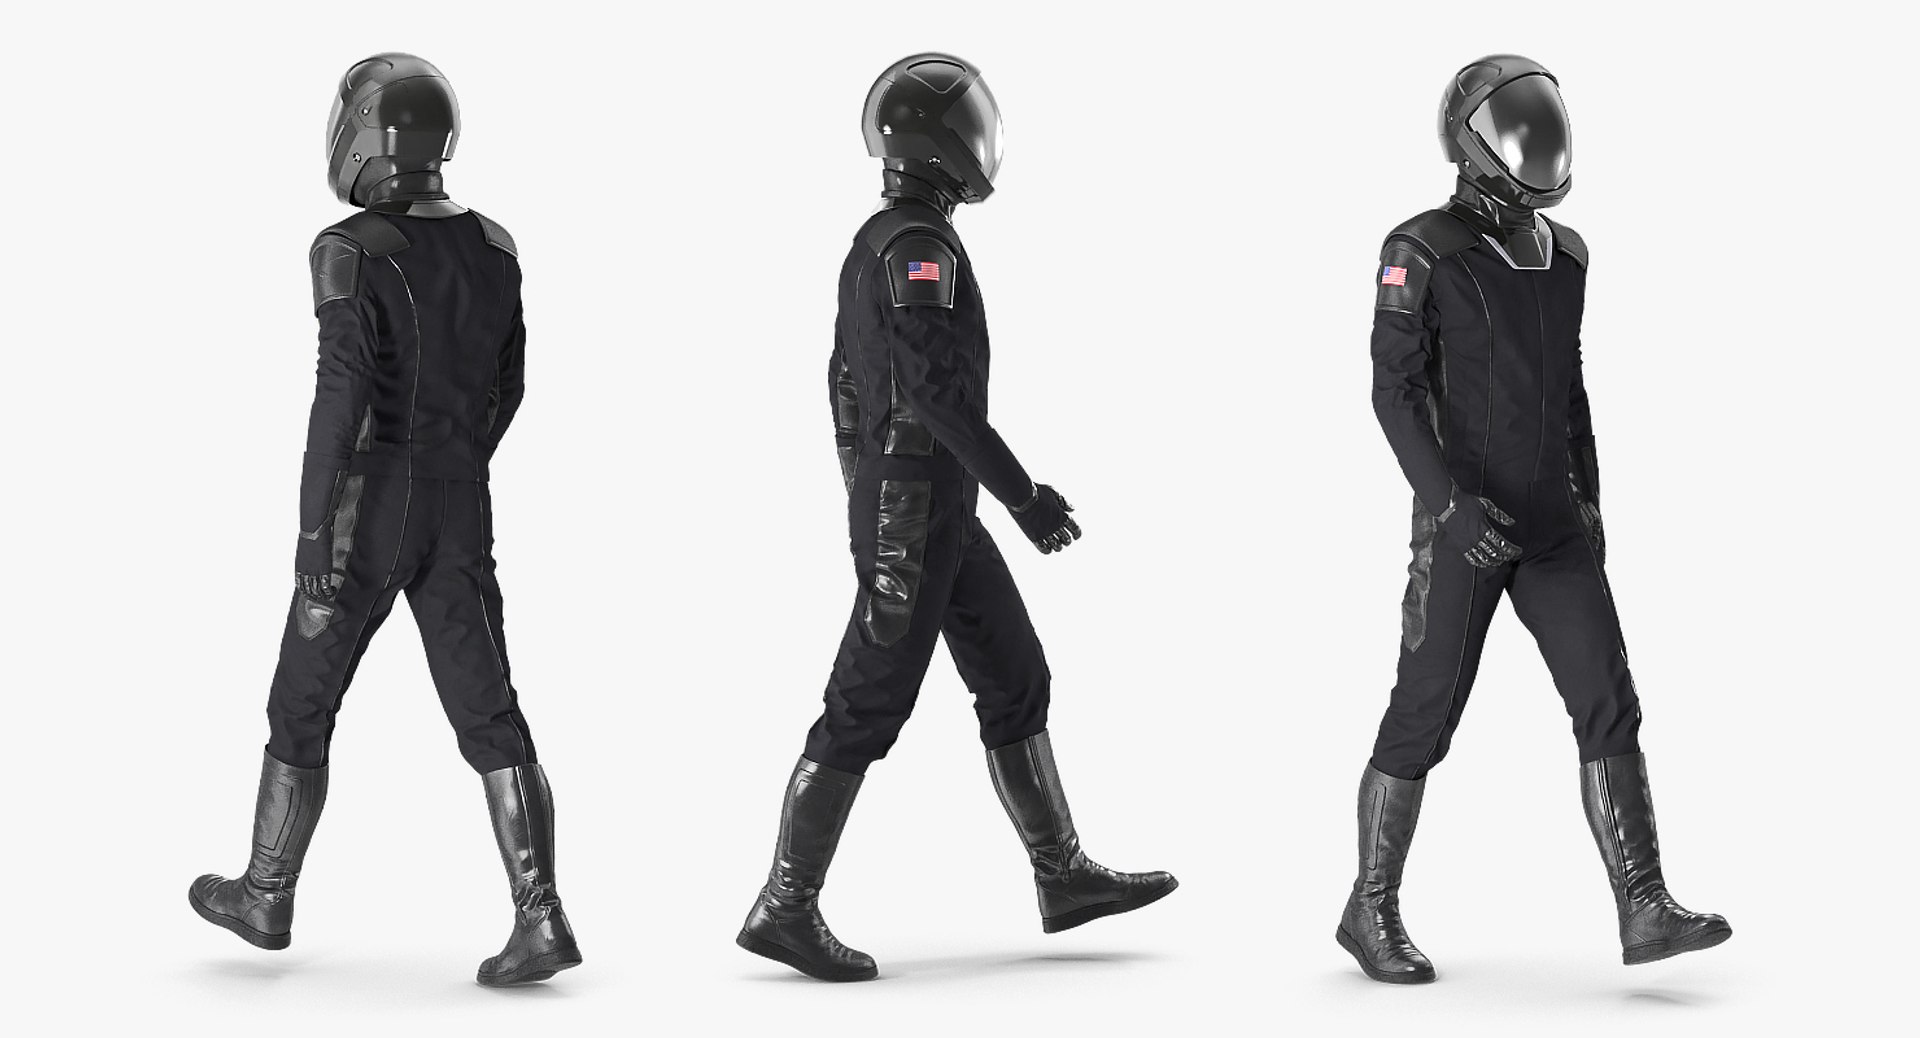 sci fi astronaut suits